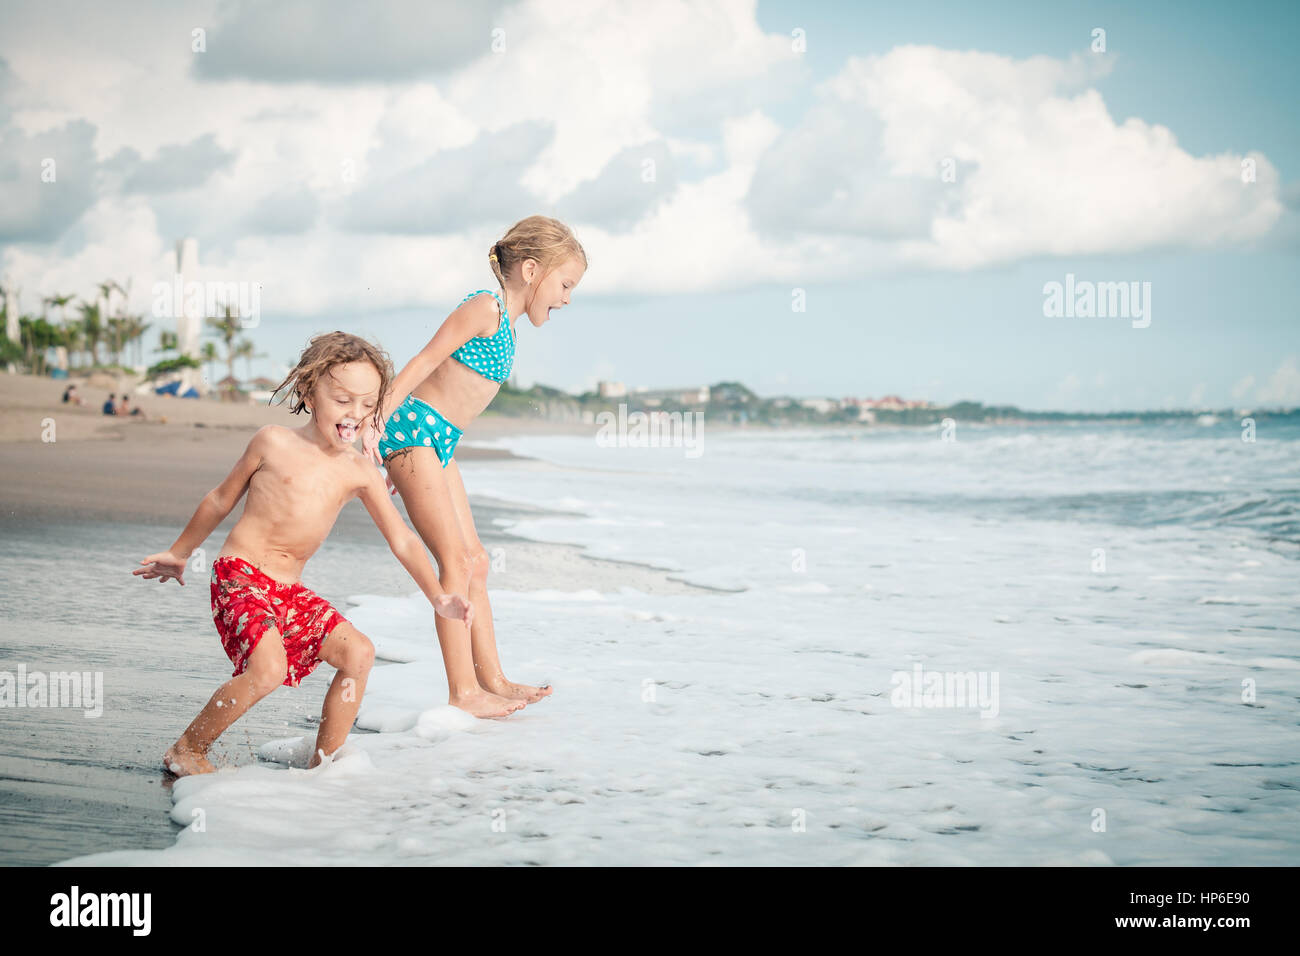 Sister and brother playing. С младшим братом на пляже. Брат и сестренка на пляже. Младшая сестра на пляже. Фотосессия брат с сестрой детками на море.